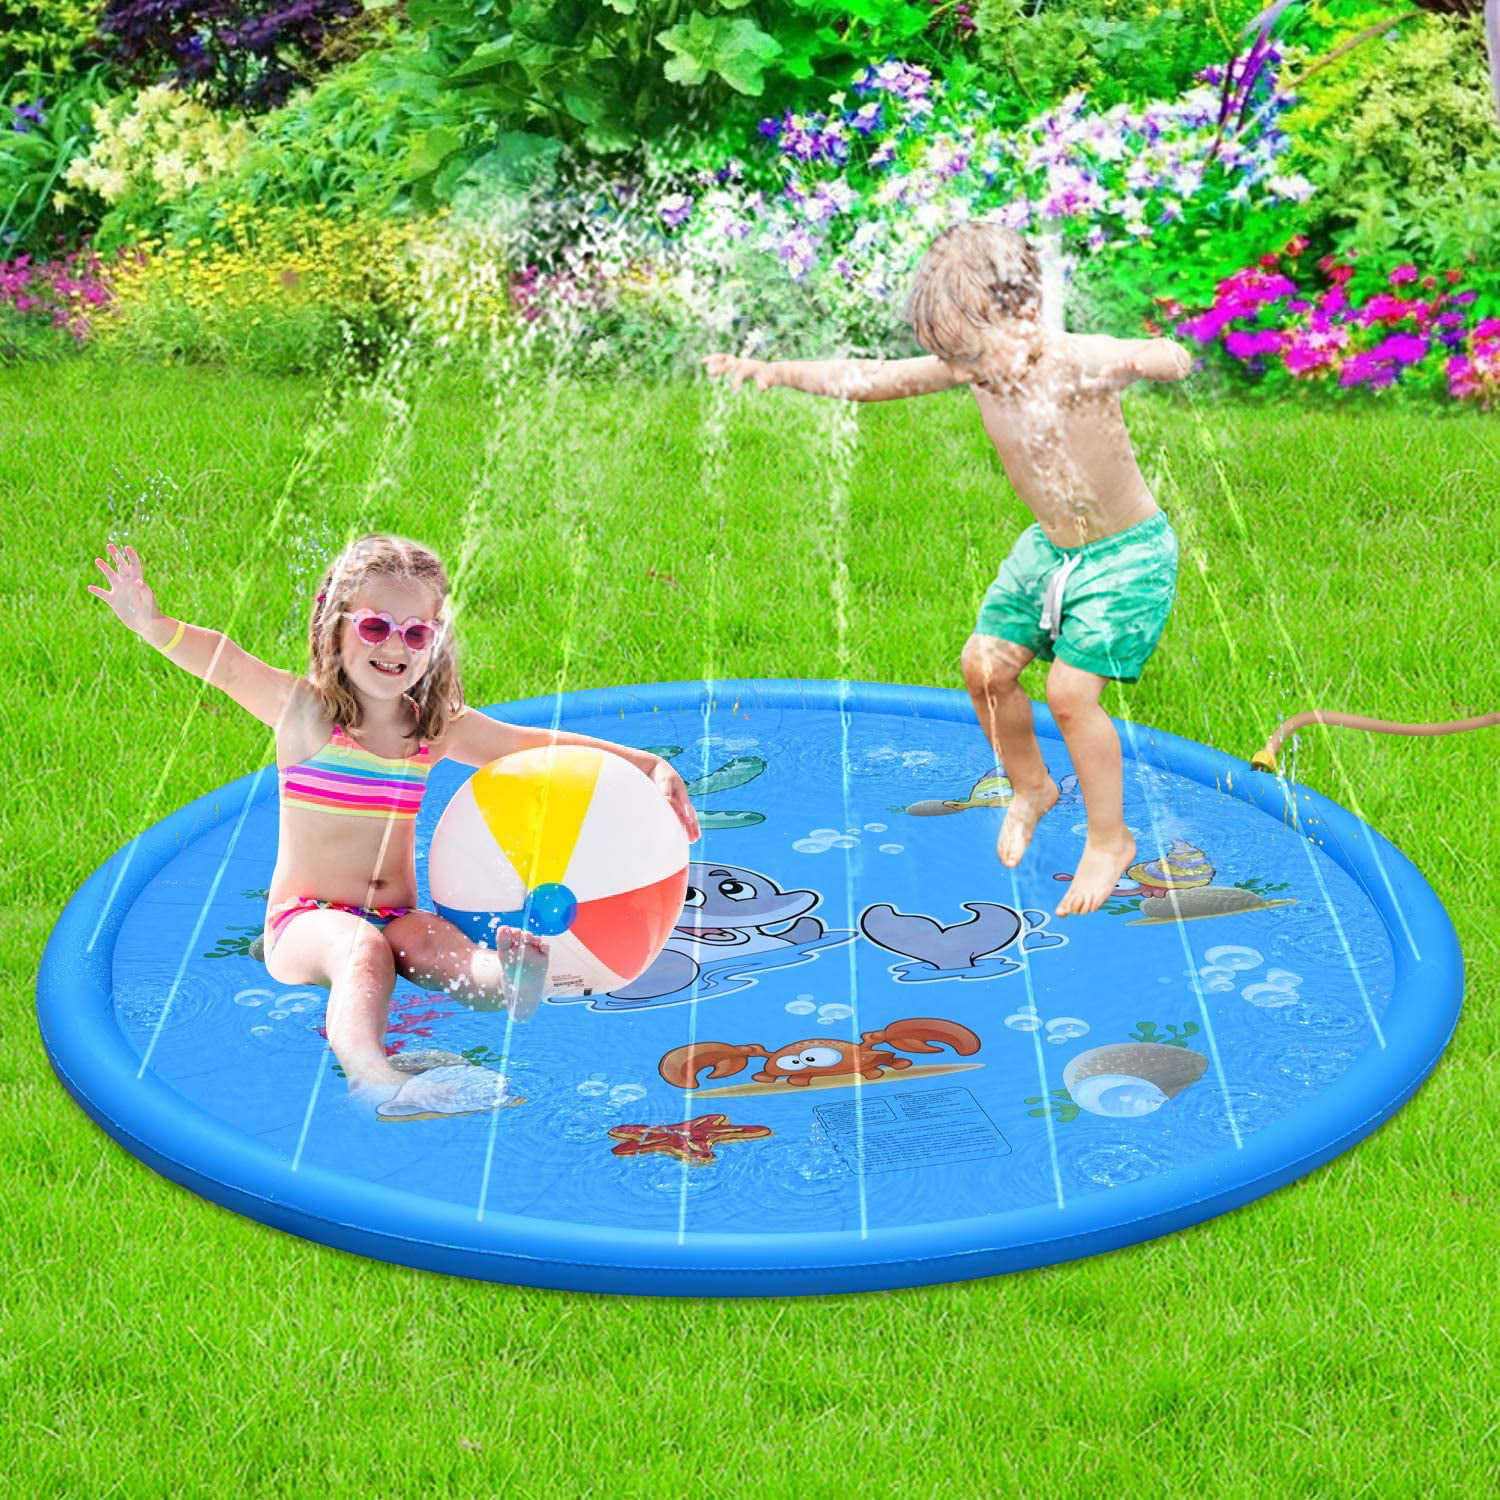 Splash Mat Play Outdoor Sprinkle Water Party Garden Toy Spray Fun Children Kids 